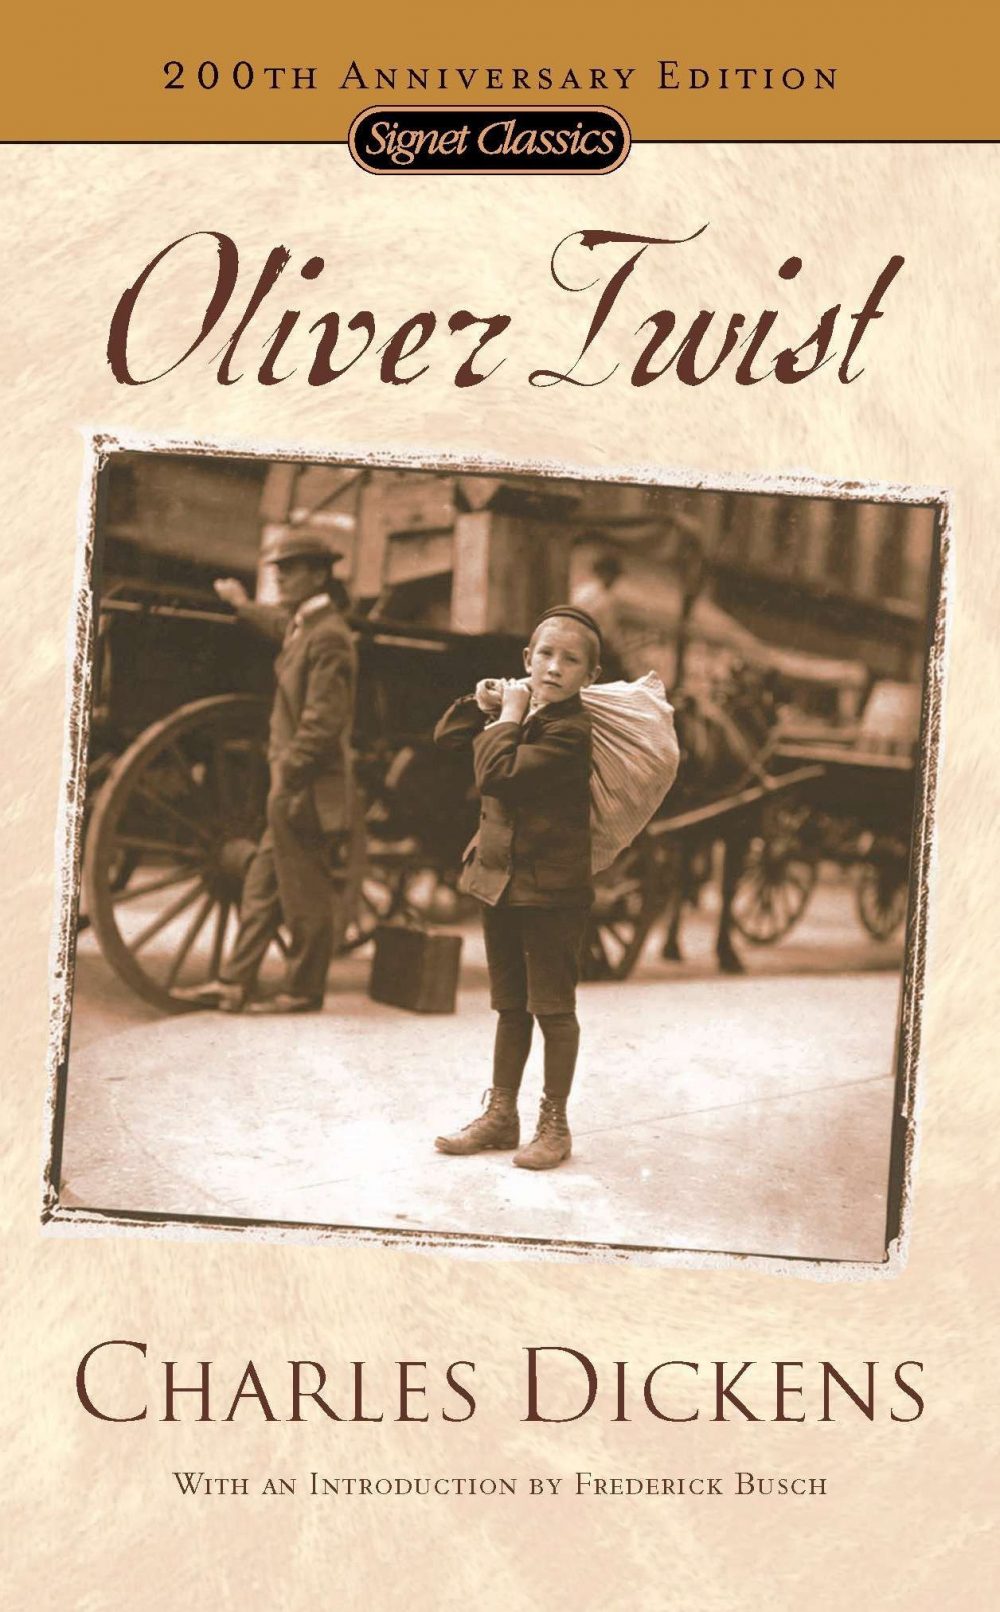 an ban khac cua tac pham oliver twist e1588770647247 - Oliver Twist: Khi cuộc đời là một khúc dương cầm